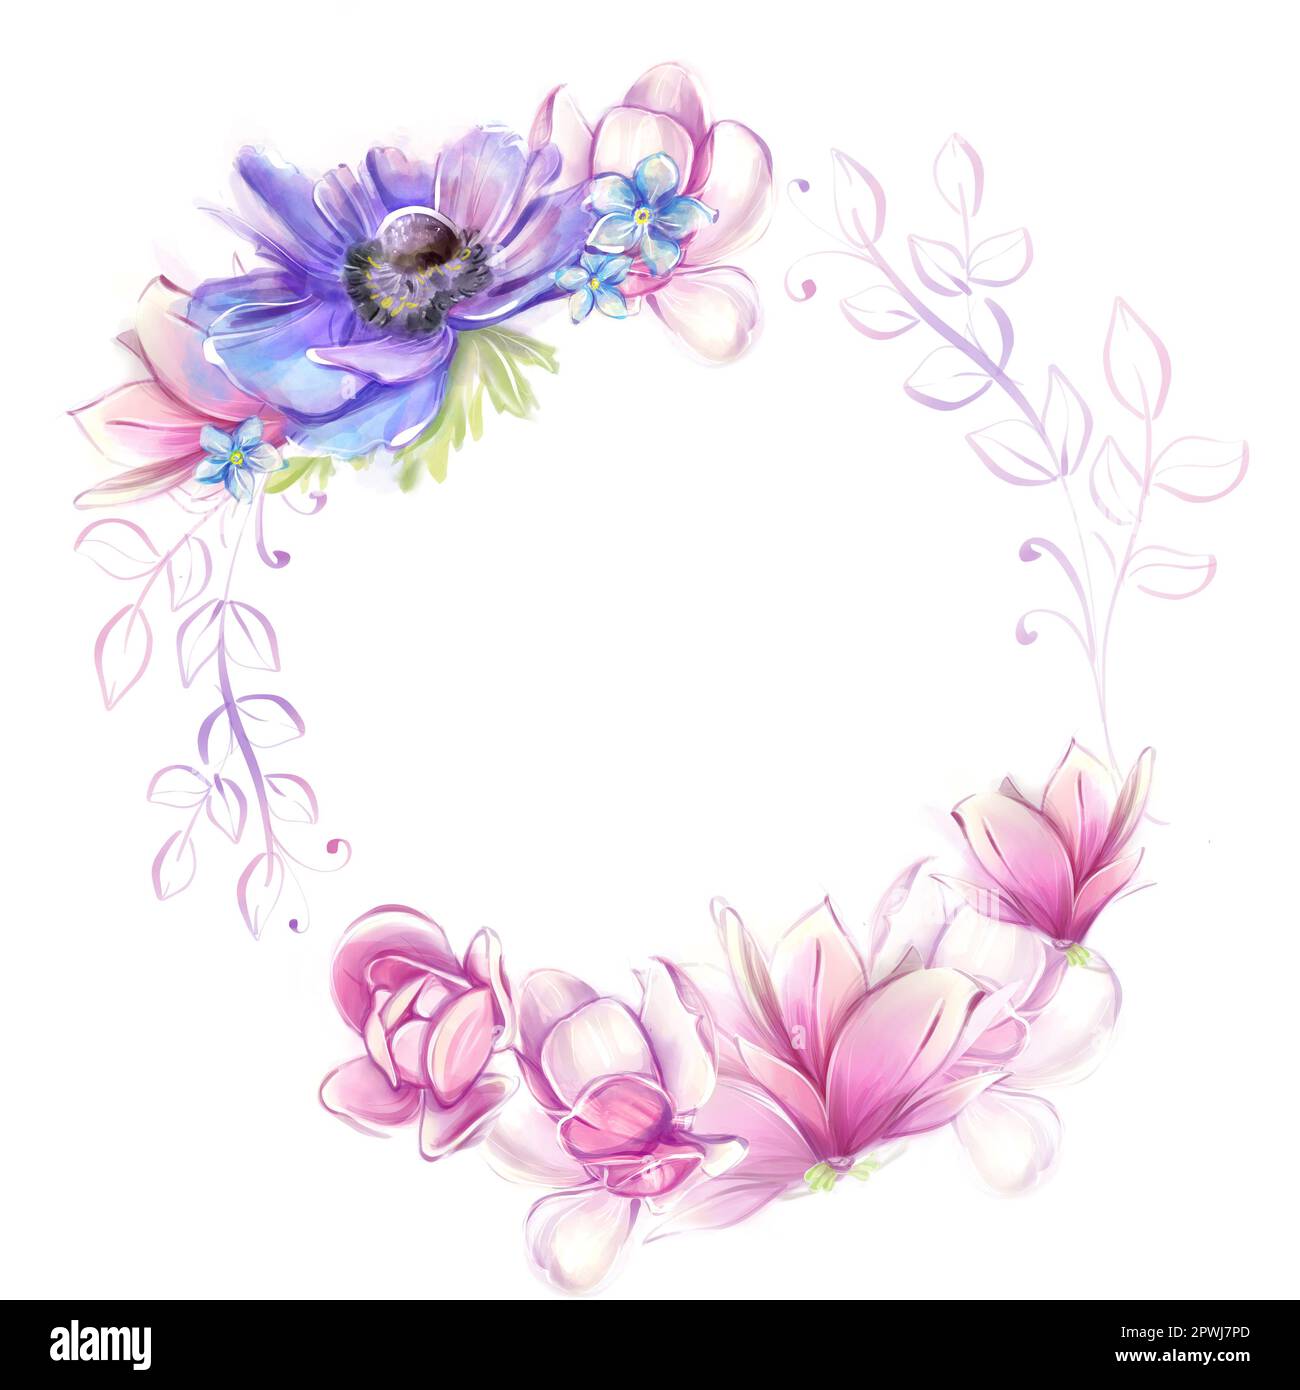 Runder Blumenrahmen mit Anemonen, Magnolien. Französische Romantik, Clipart. Rosa und blaue Blumen in Aquarellfarben. Stockfoto